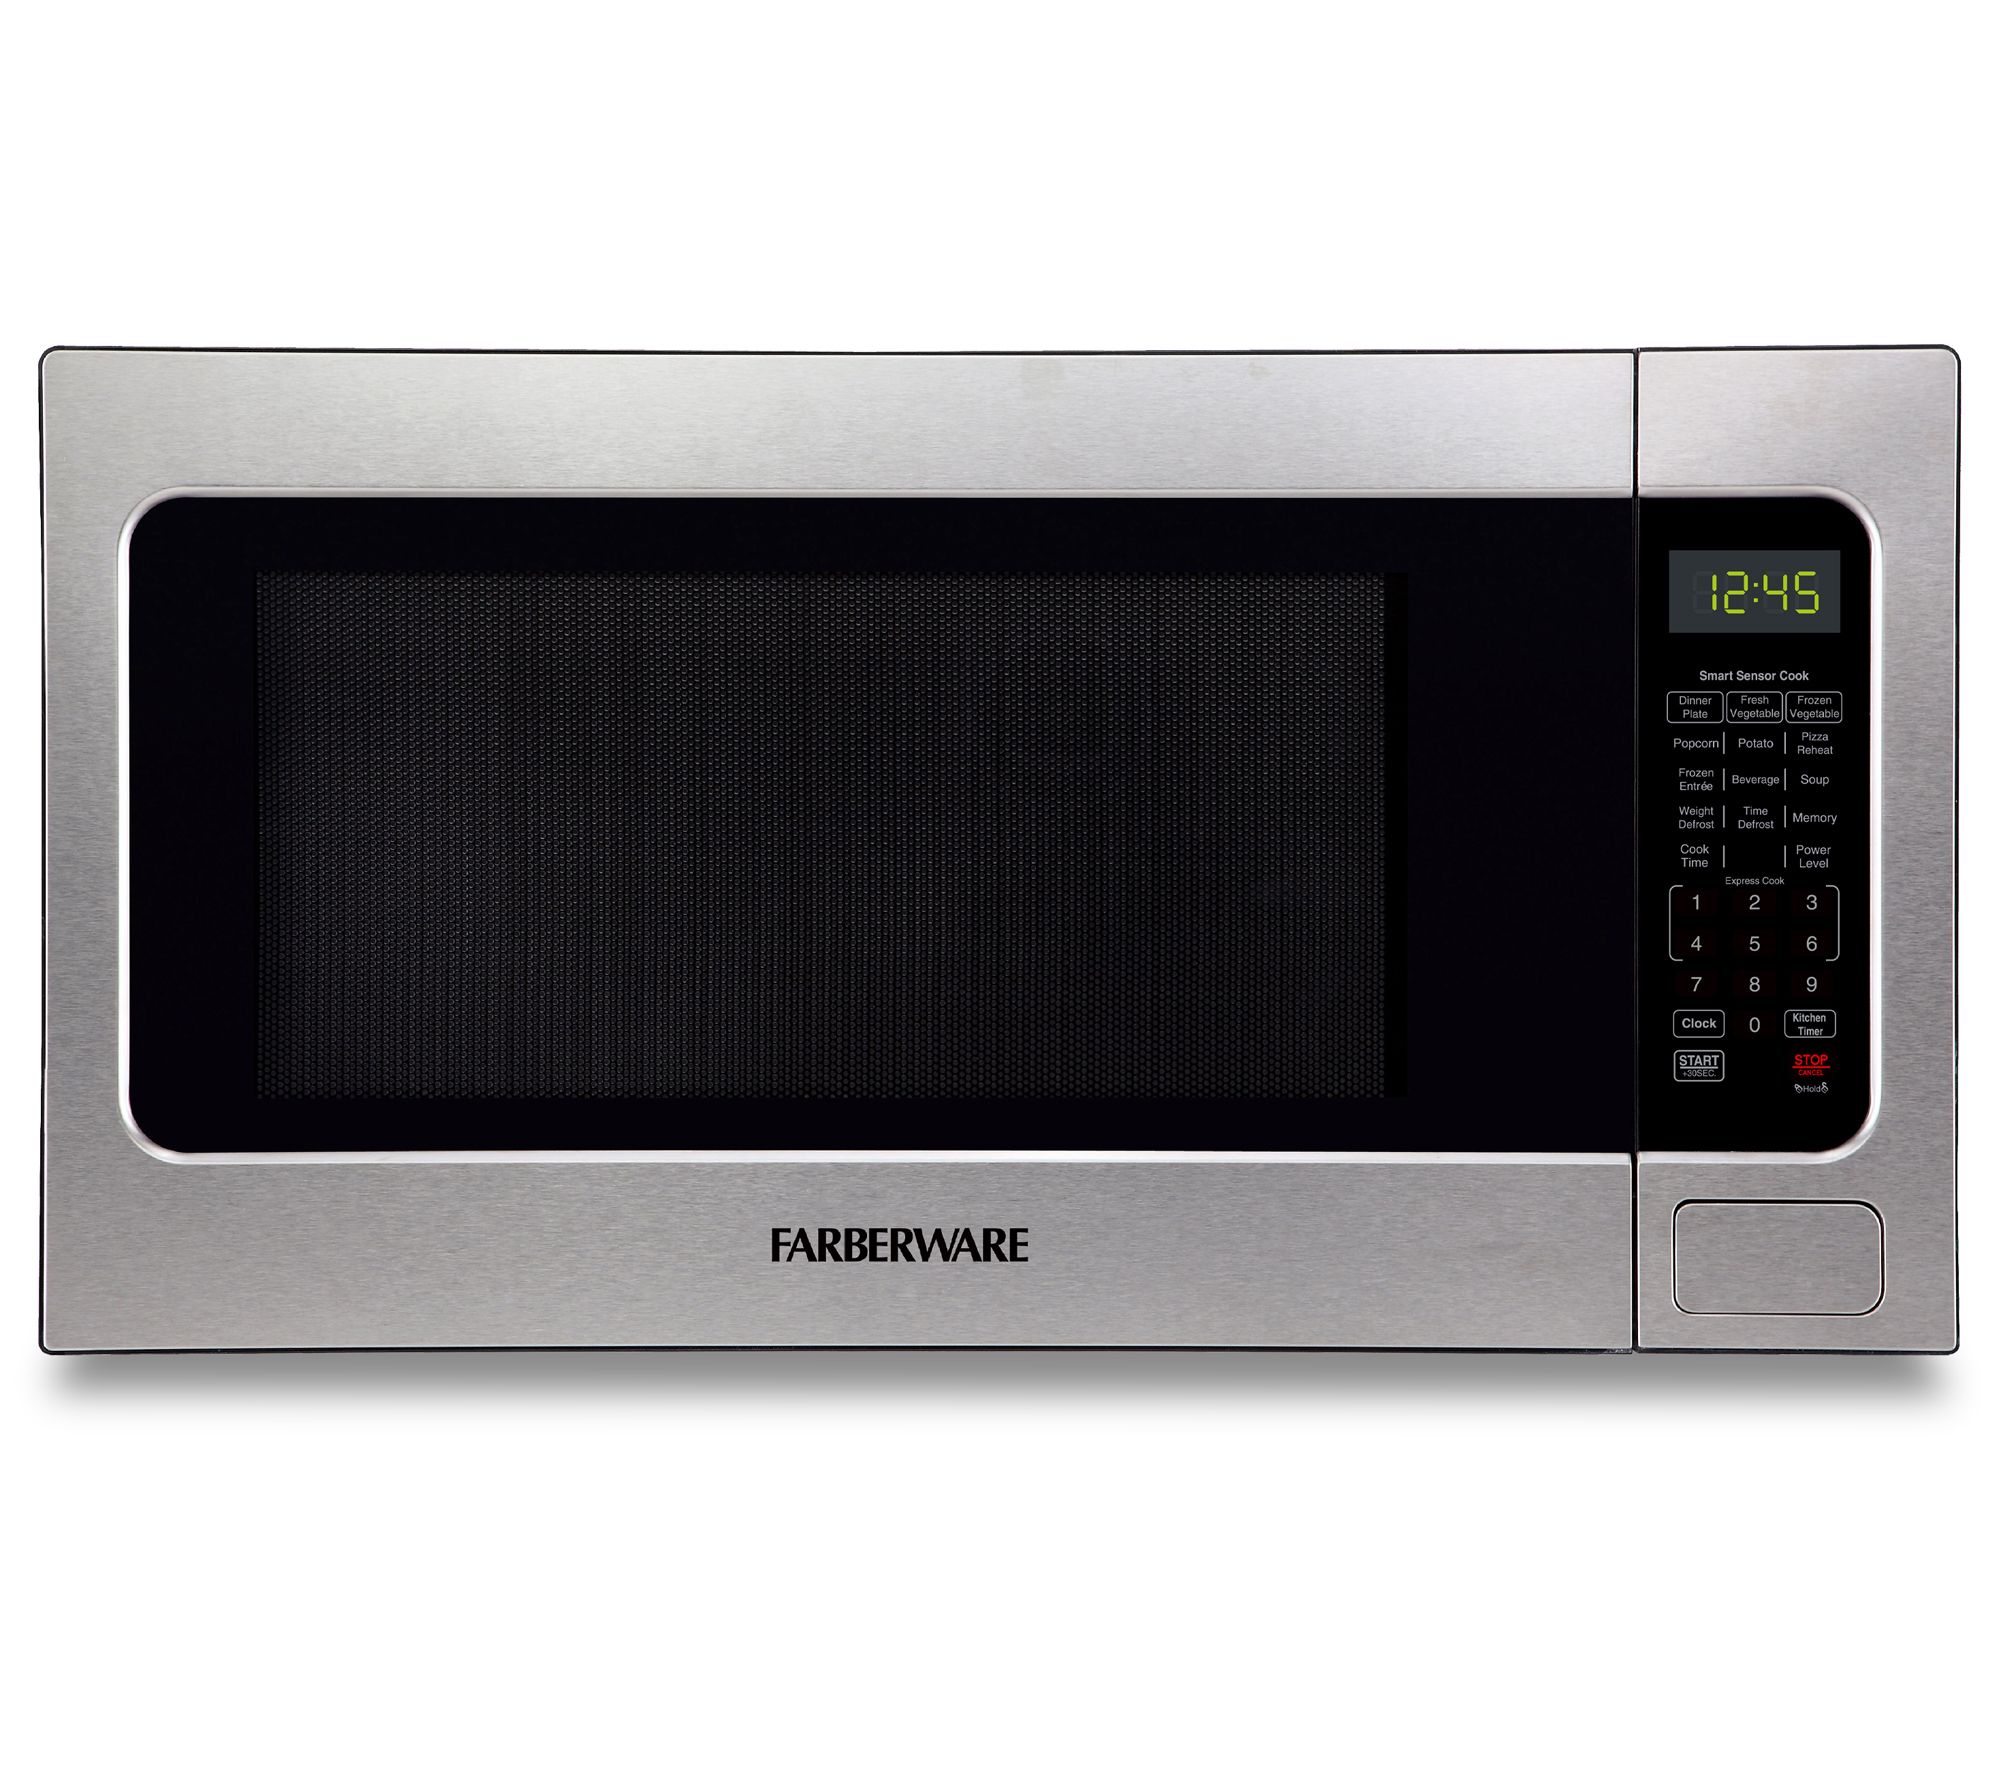  Chefman MicroCrisp Countertop Digital Microwave Oven